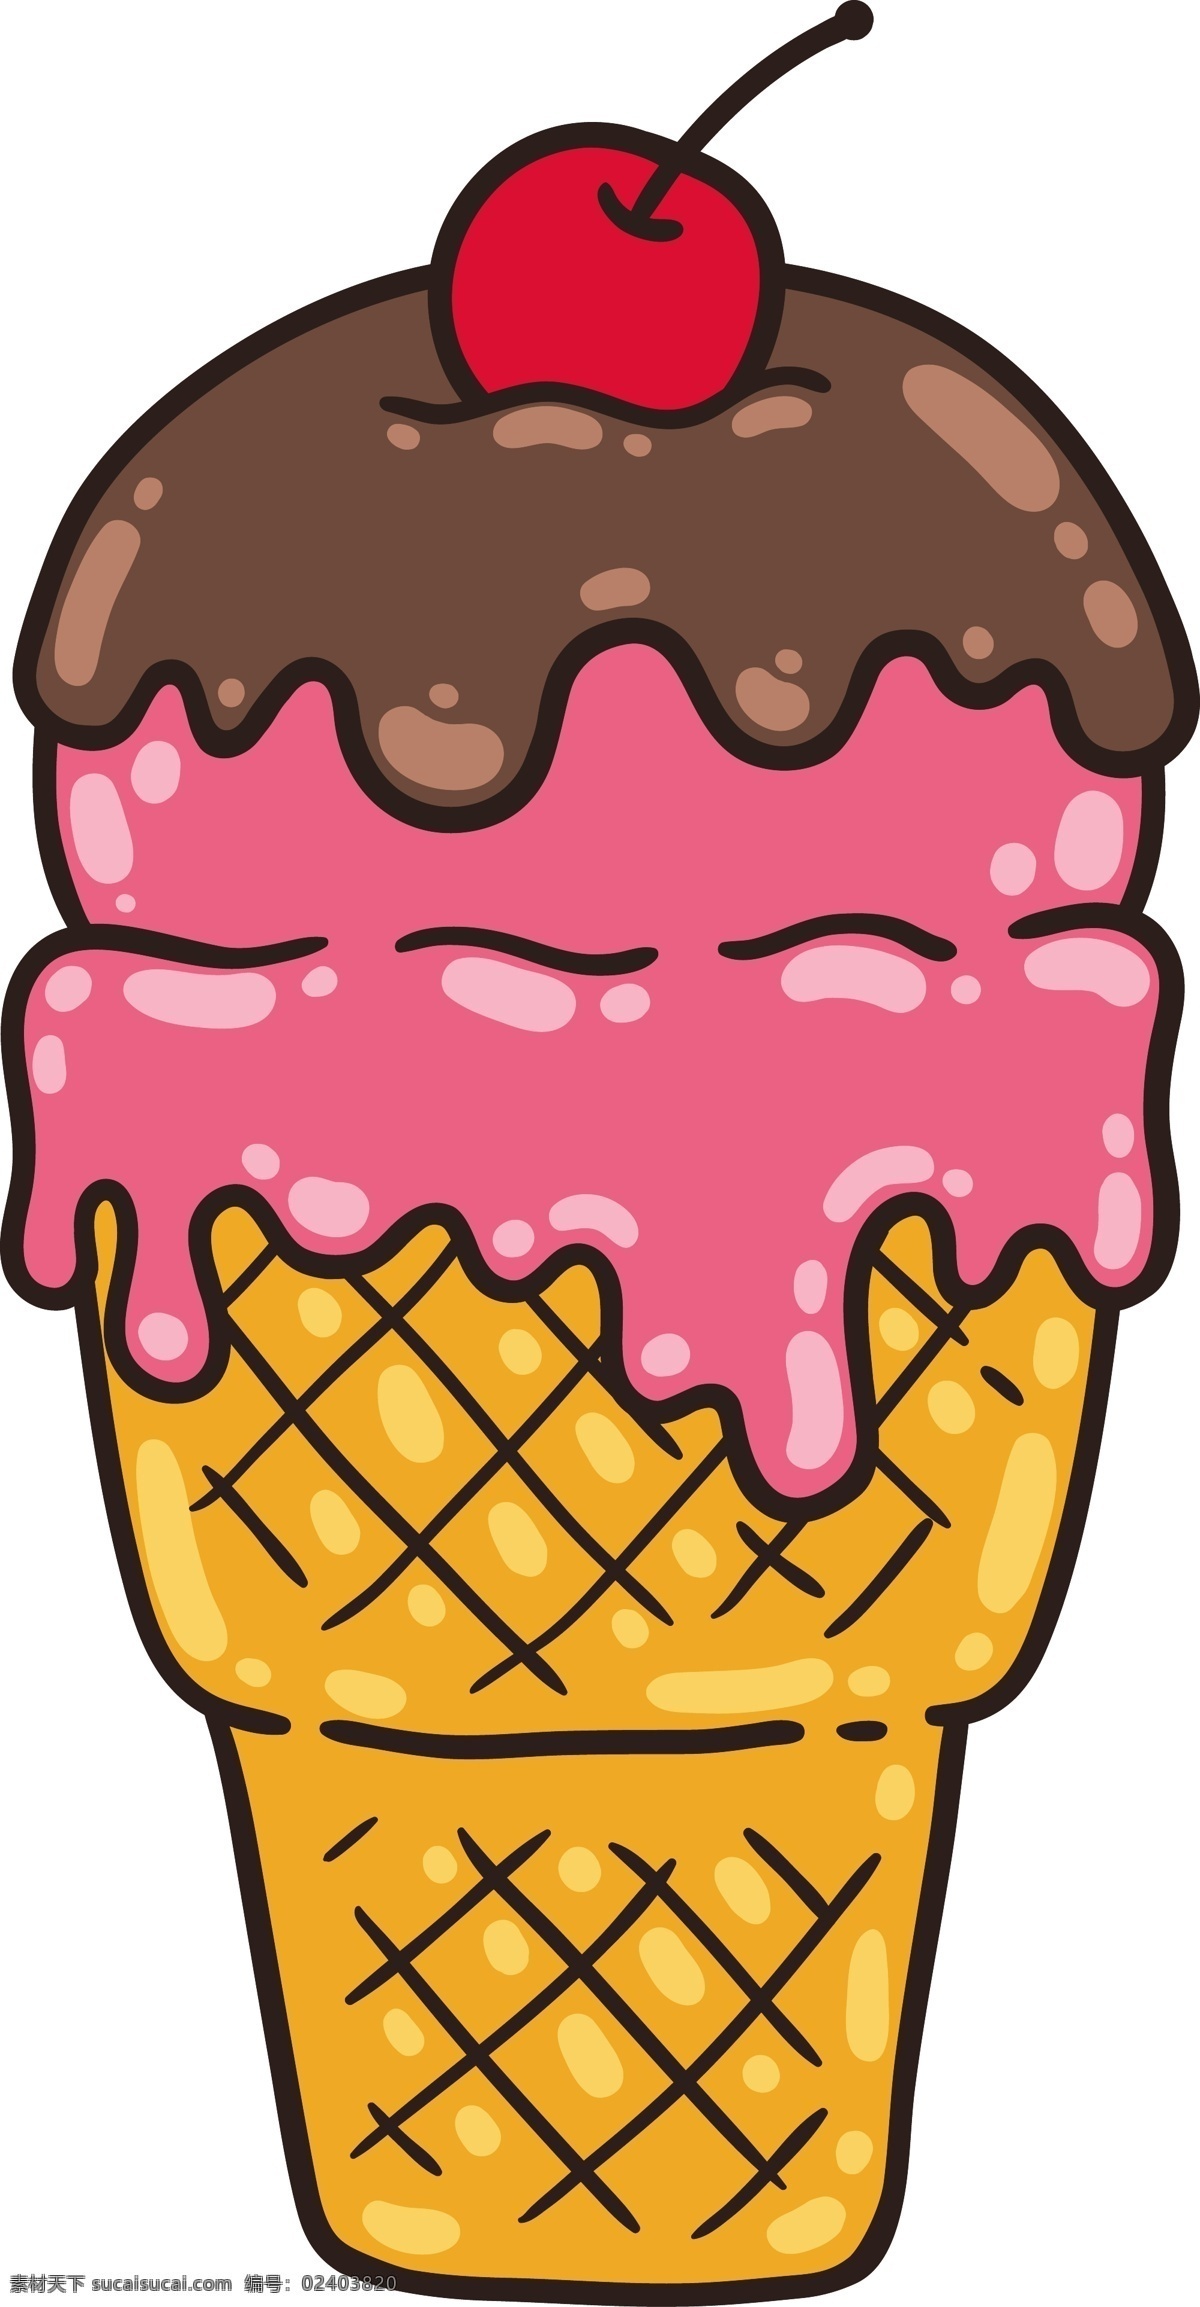 甜点 冰淇凌 图标 手绘糖果 糖果 手绘食物 手绘美食 糖 甜品 手绘甜点 矢量素材 甜点图标 冰淇凌图标 手绘冰淇凌 雪糕